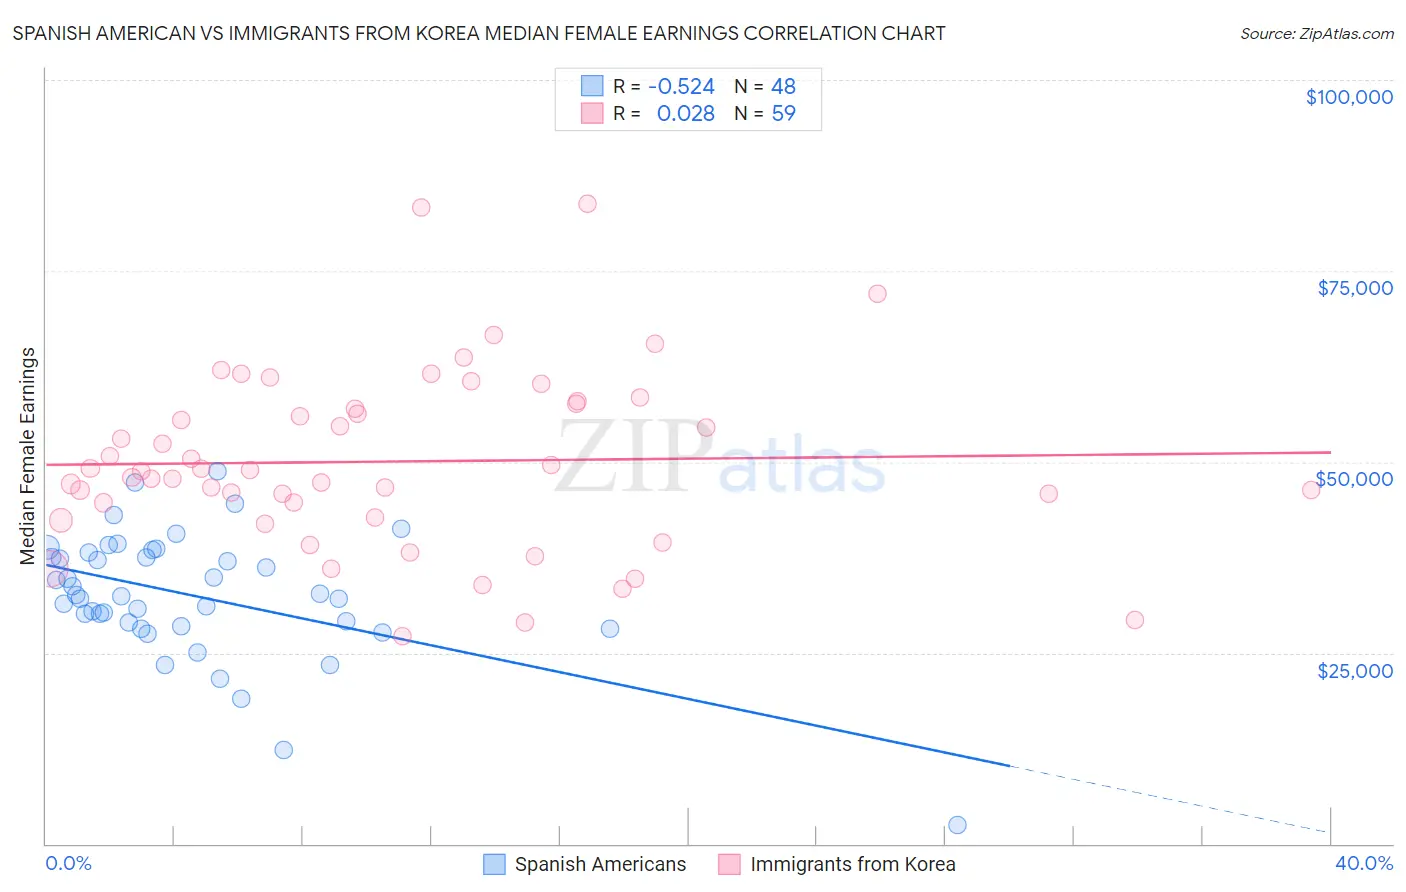 Spanish American vs Immigrants from Korea Median Female Earnings